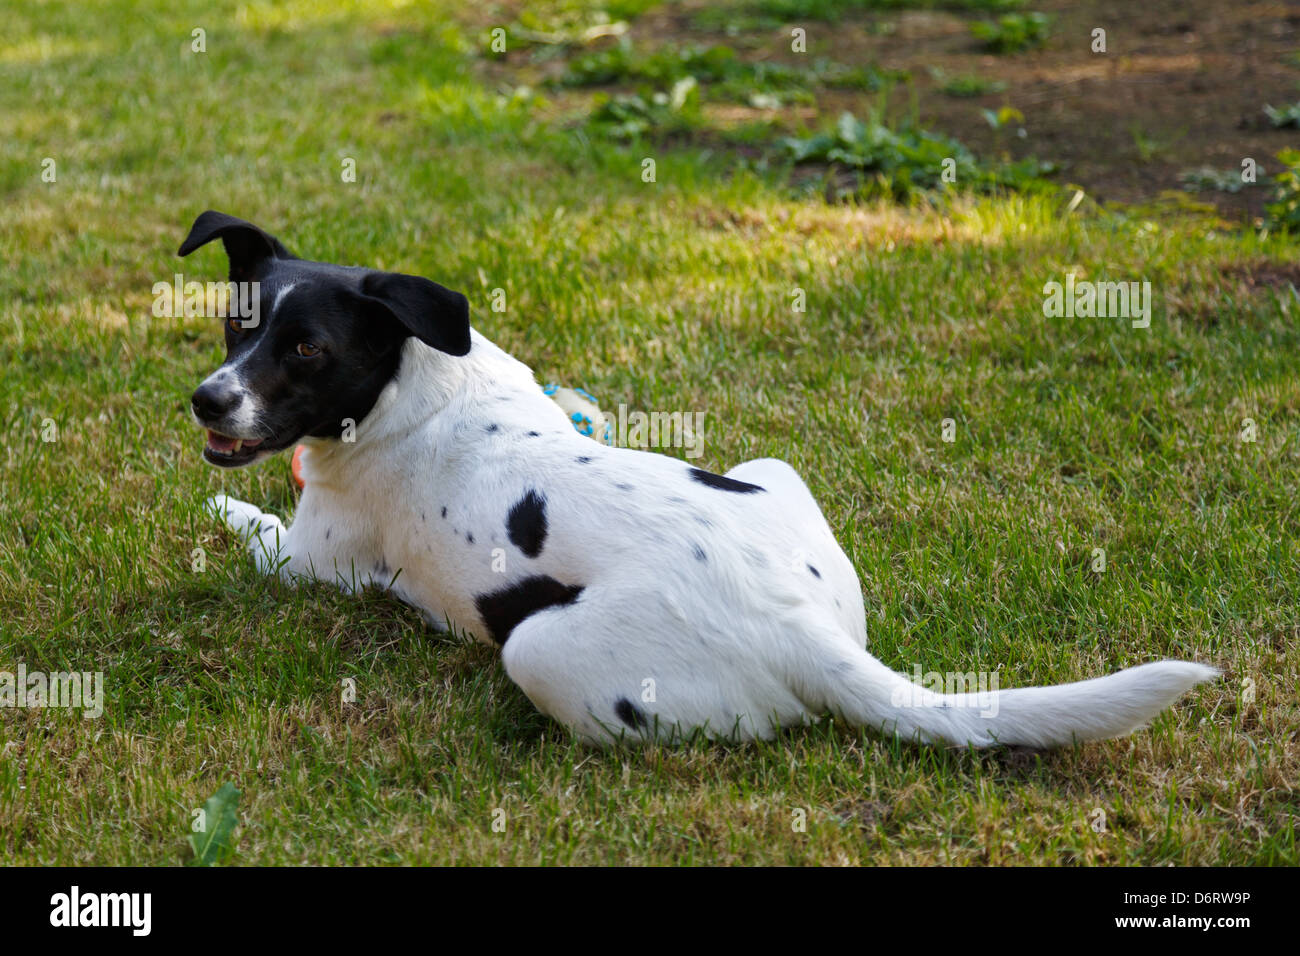 L'Emden, Allemagne, un chien se trouve dans un jardin sur la pelouse Banque D'Images